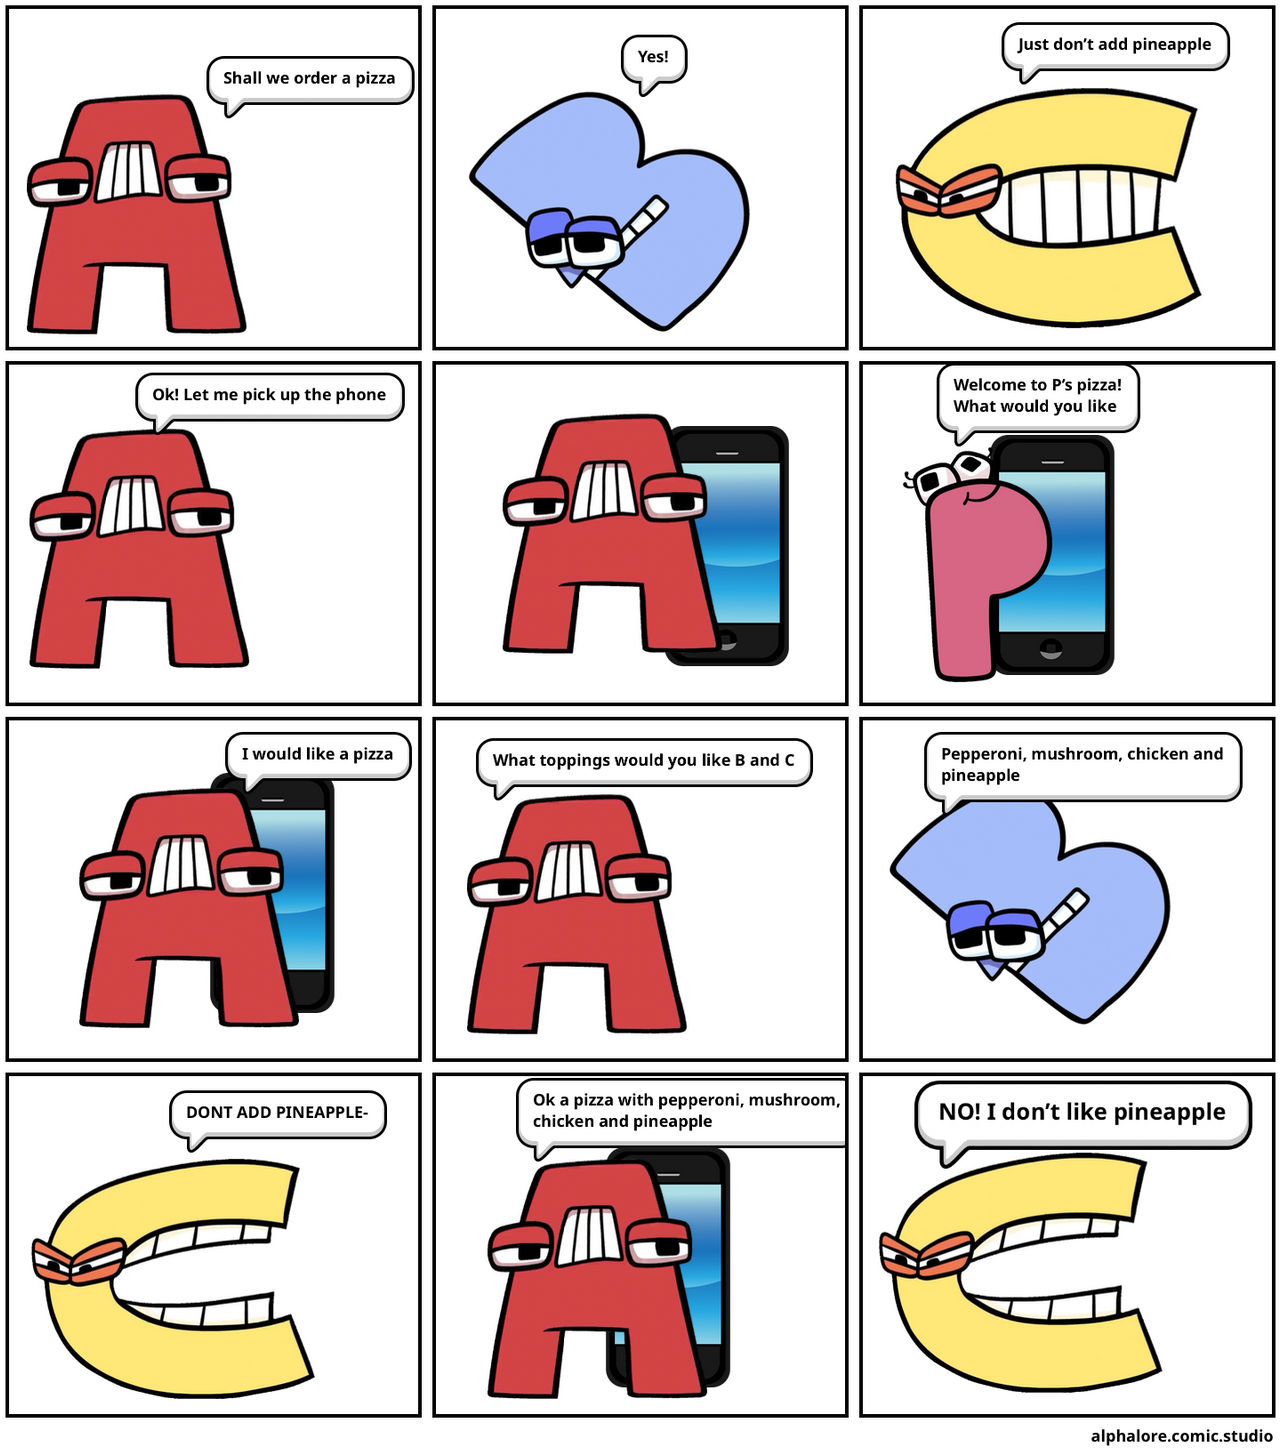 Y from Alphabet Lore - Comic Studio